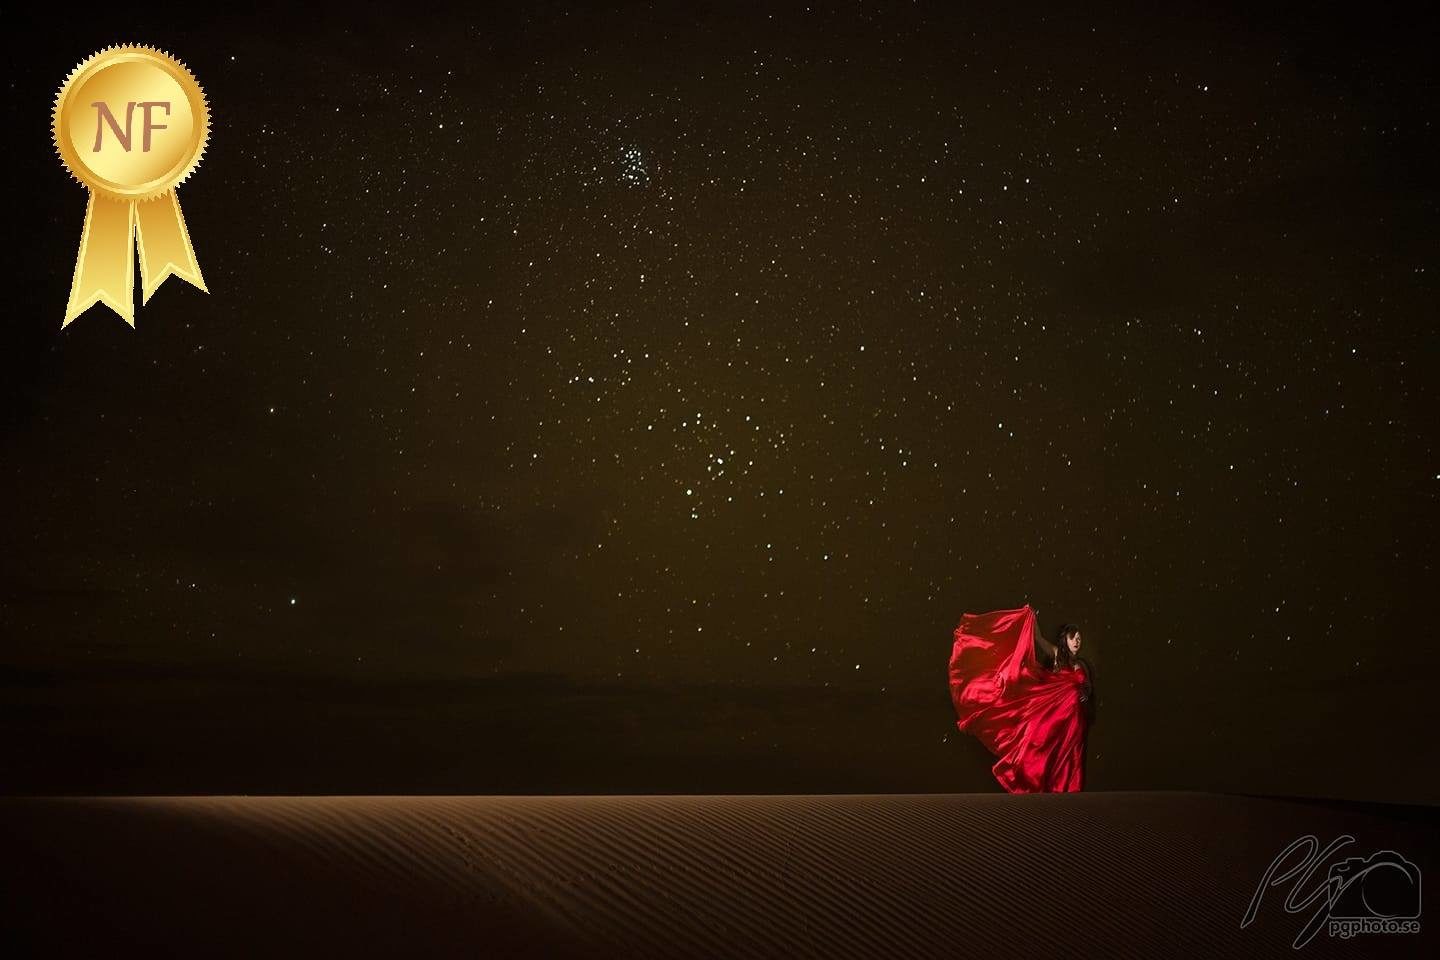 Marocko-öknen-stjärnor-NordiskaFotoklubben-PatrikGineman-2018